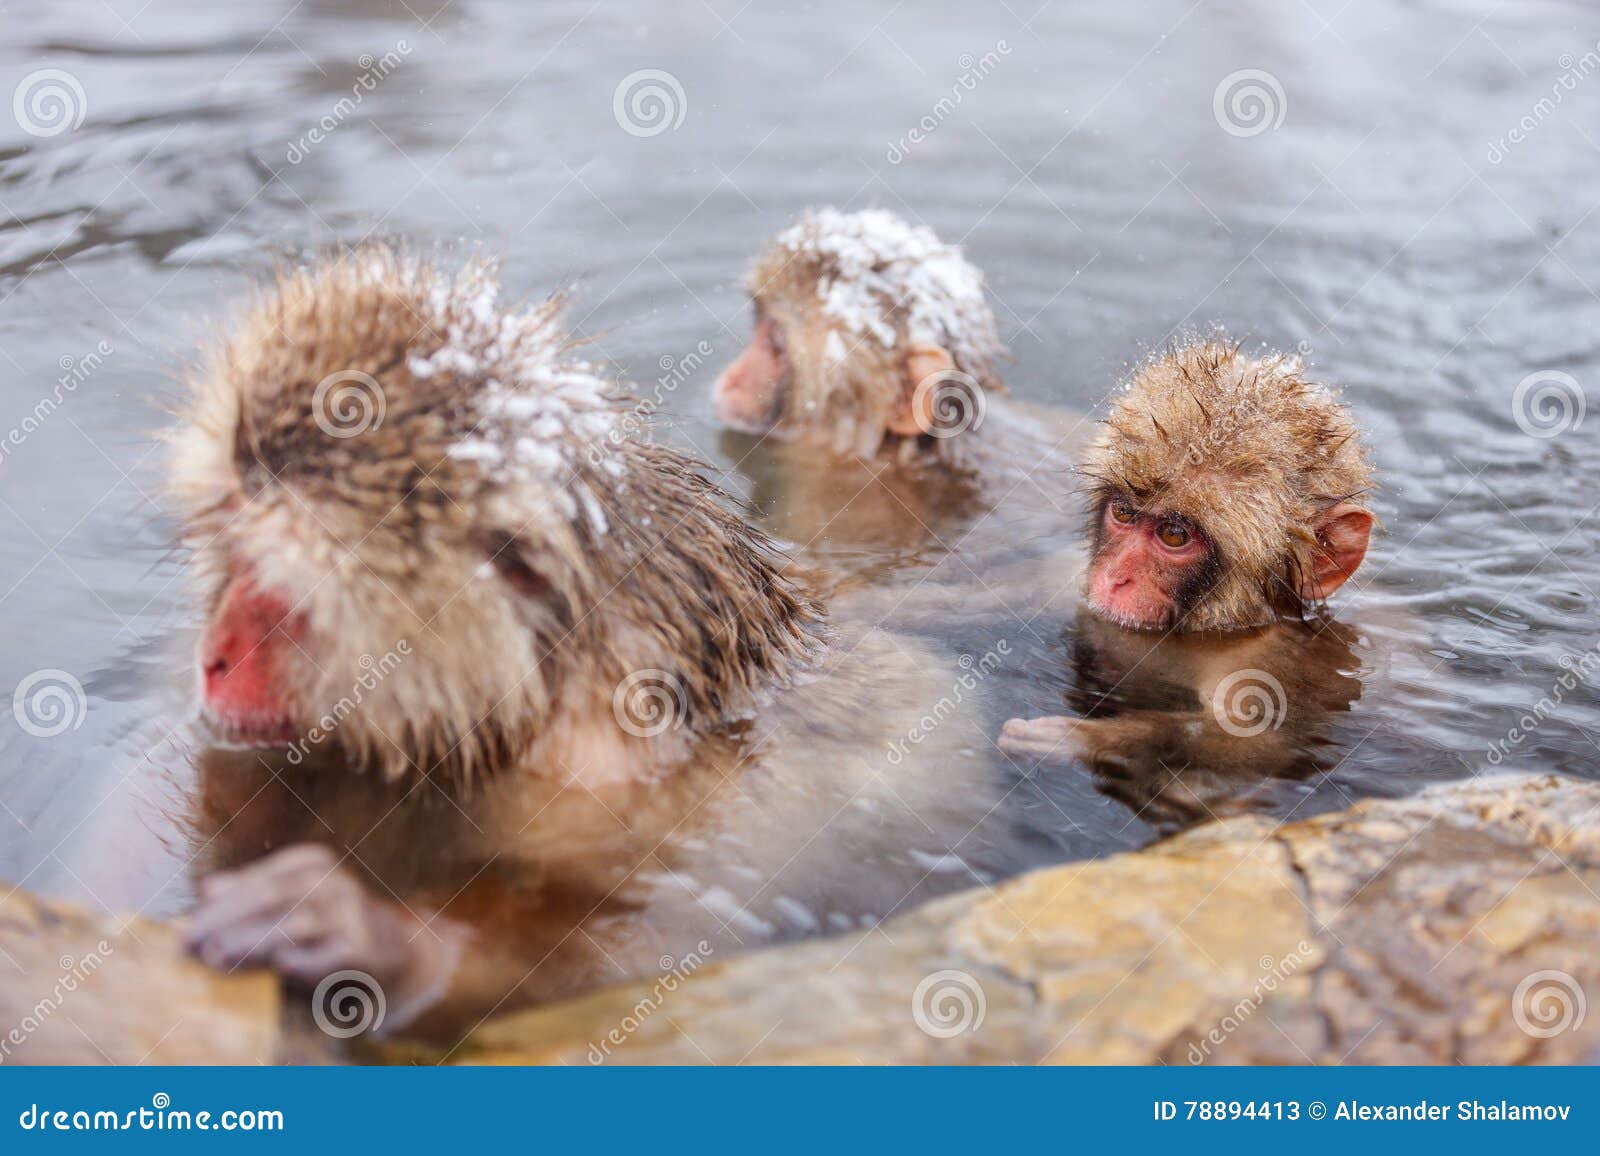 Группа обезьяна купается в теплой